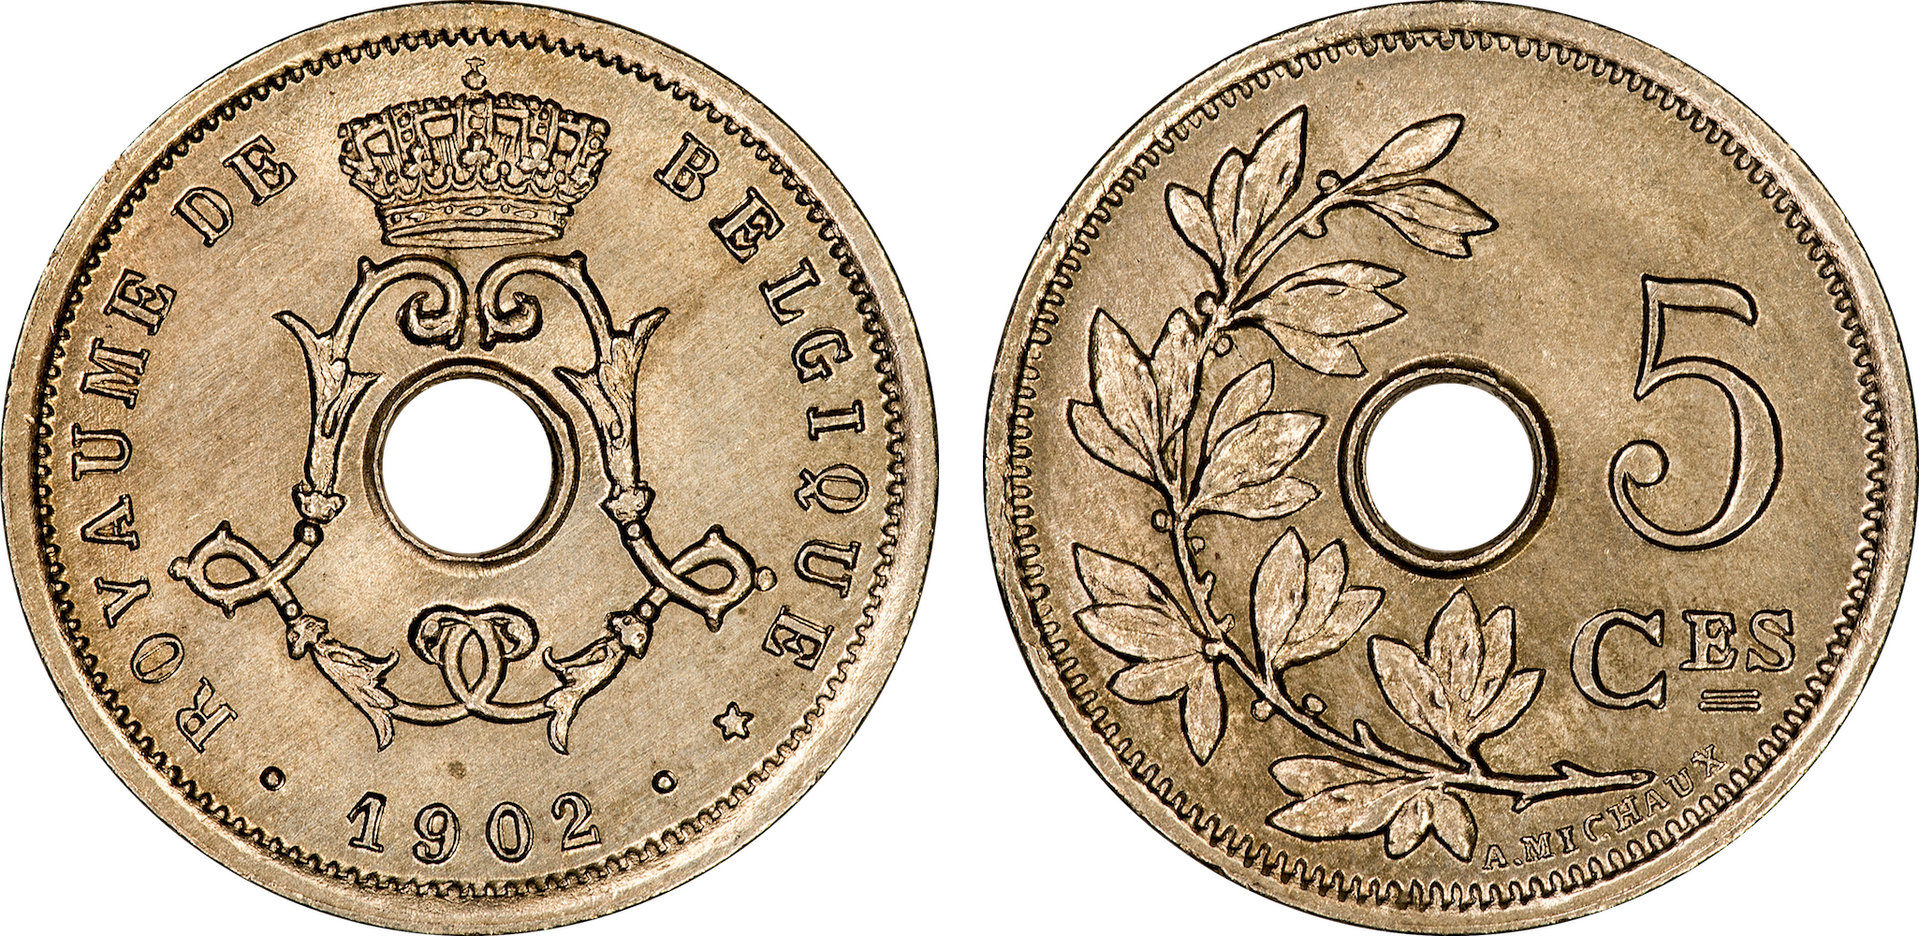 Belgium - 1902 5 Centimes.jpg